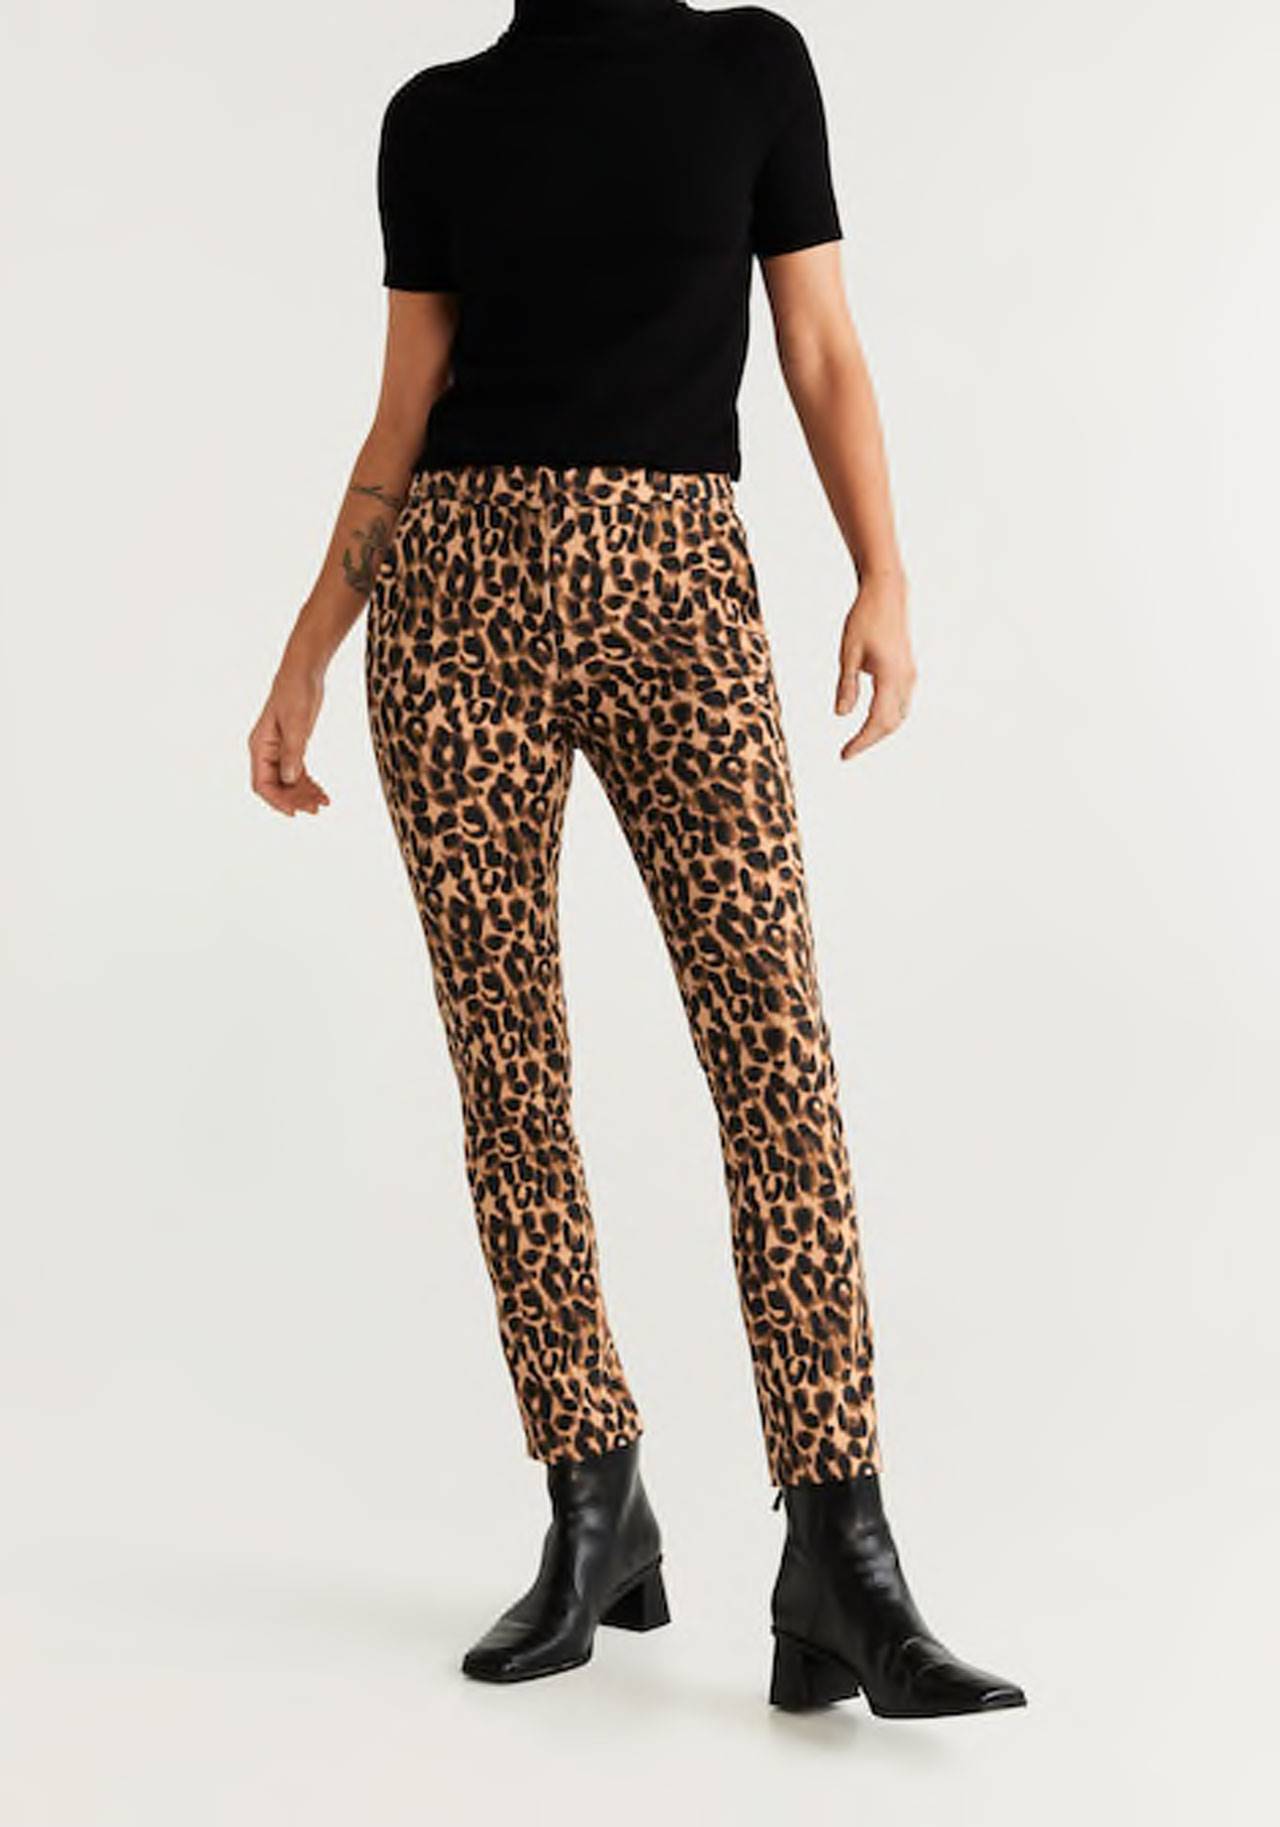 pantalon-estampado-de-leopardo